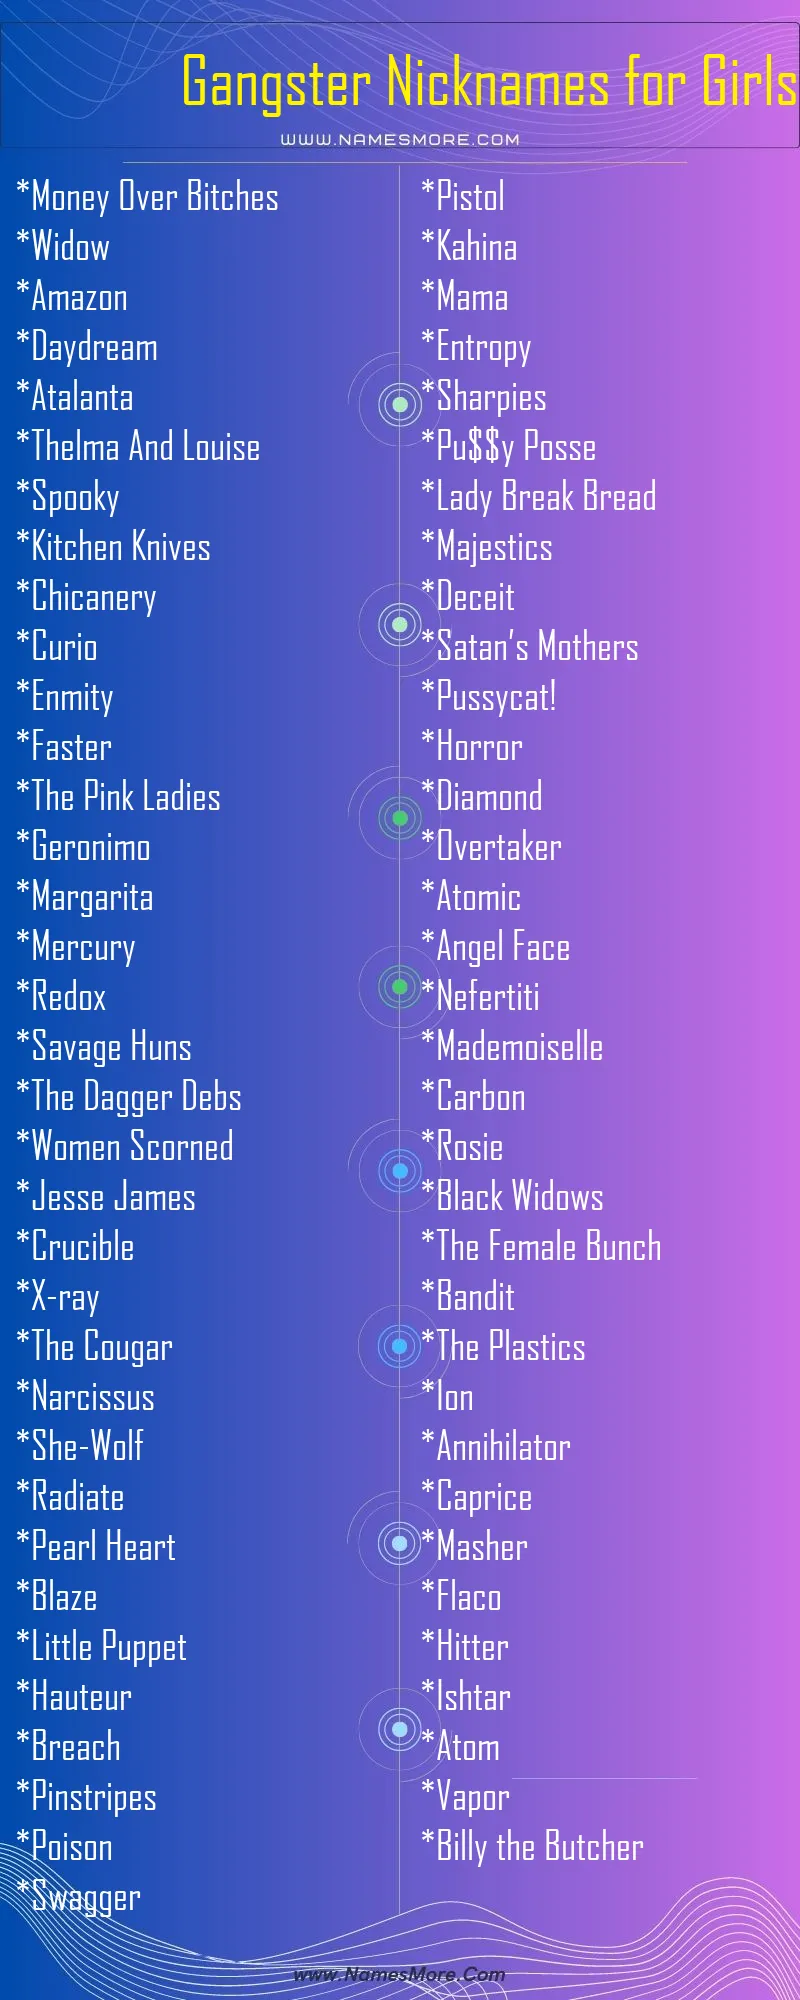 Gangster Nicknames for Girls List Infographic